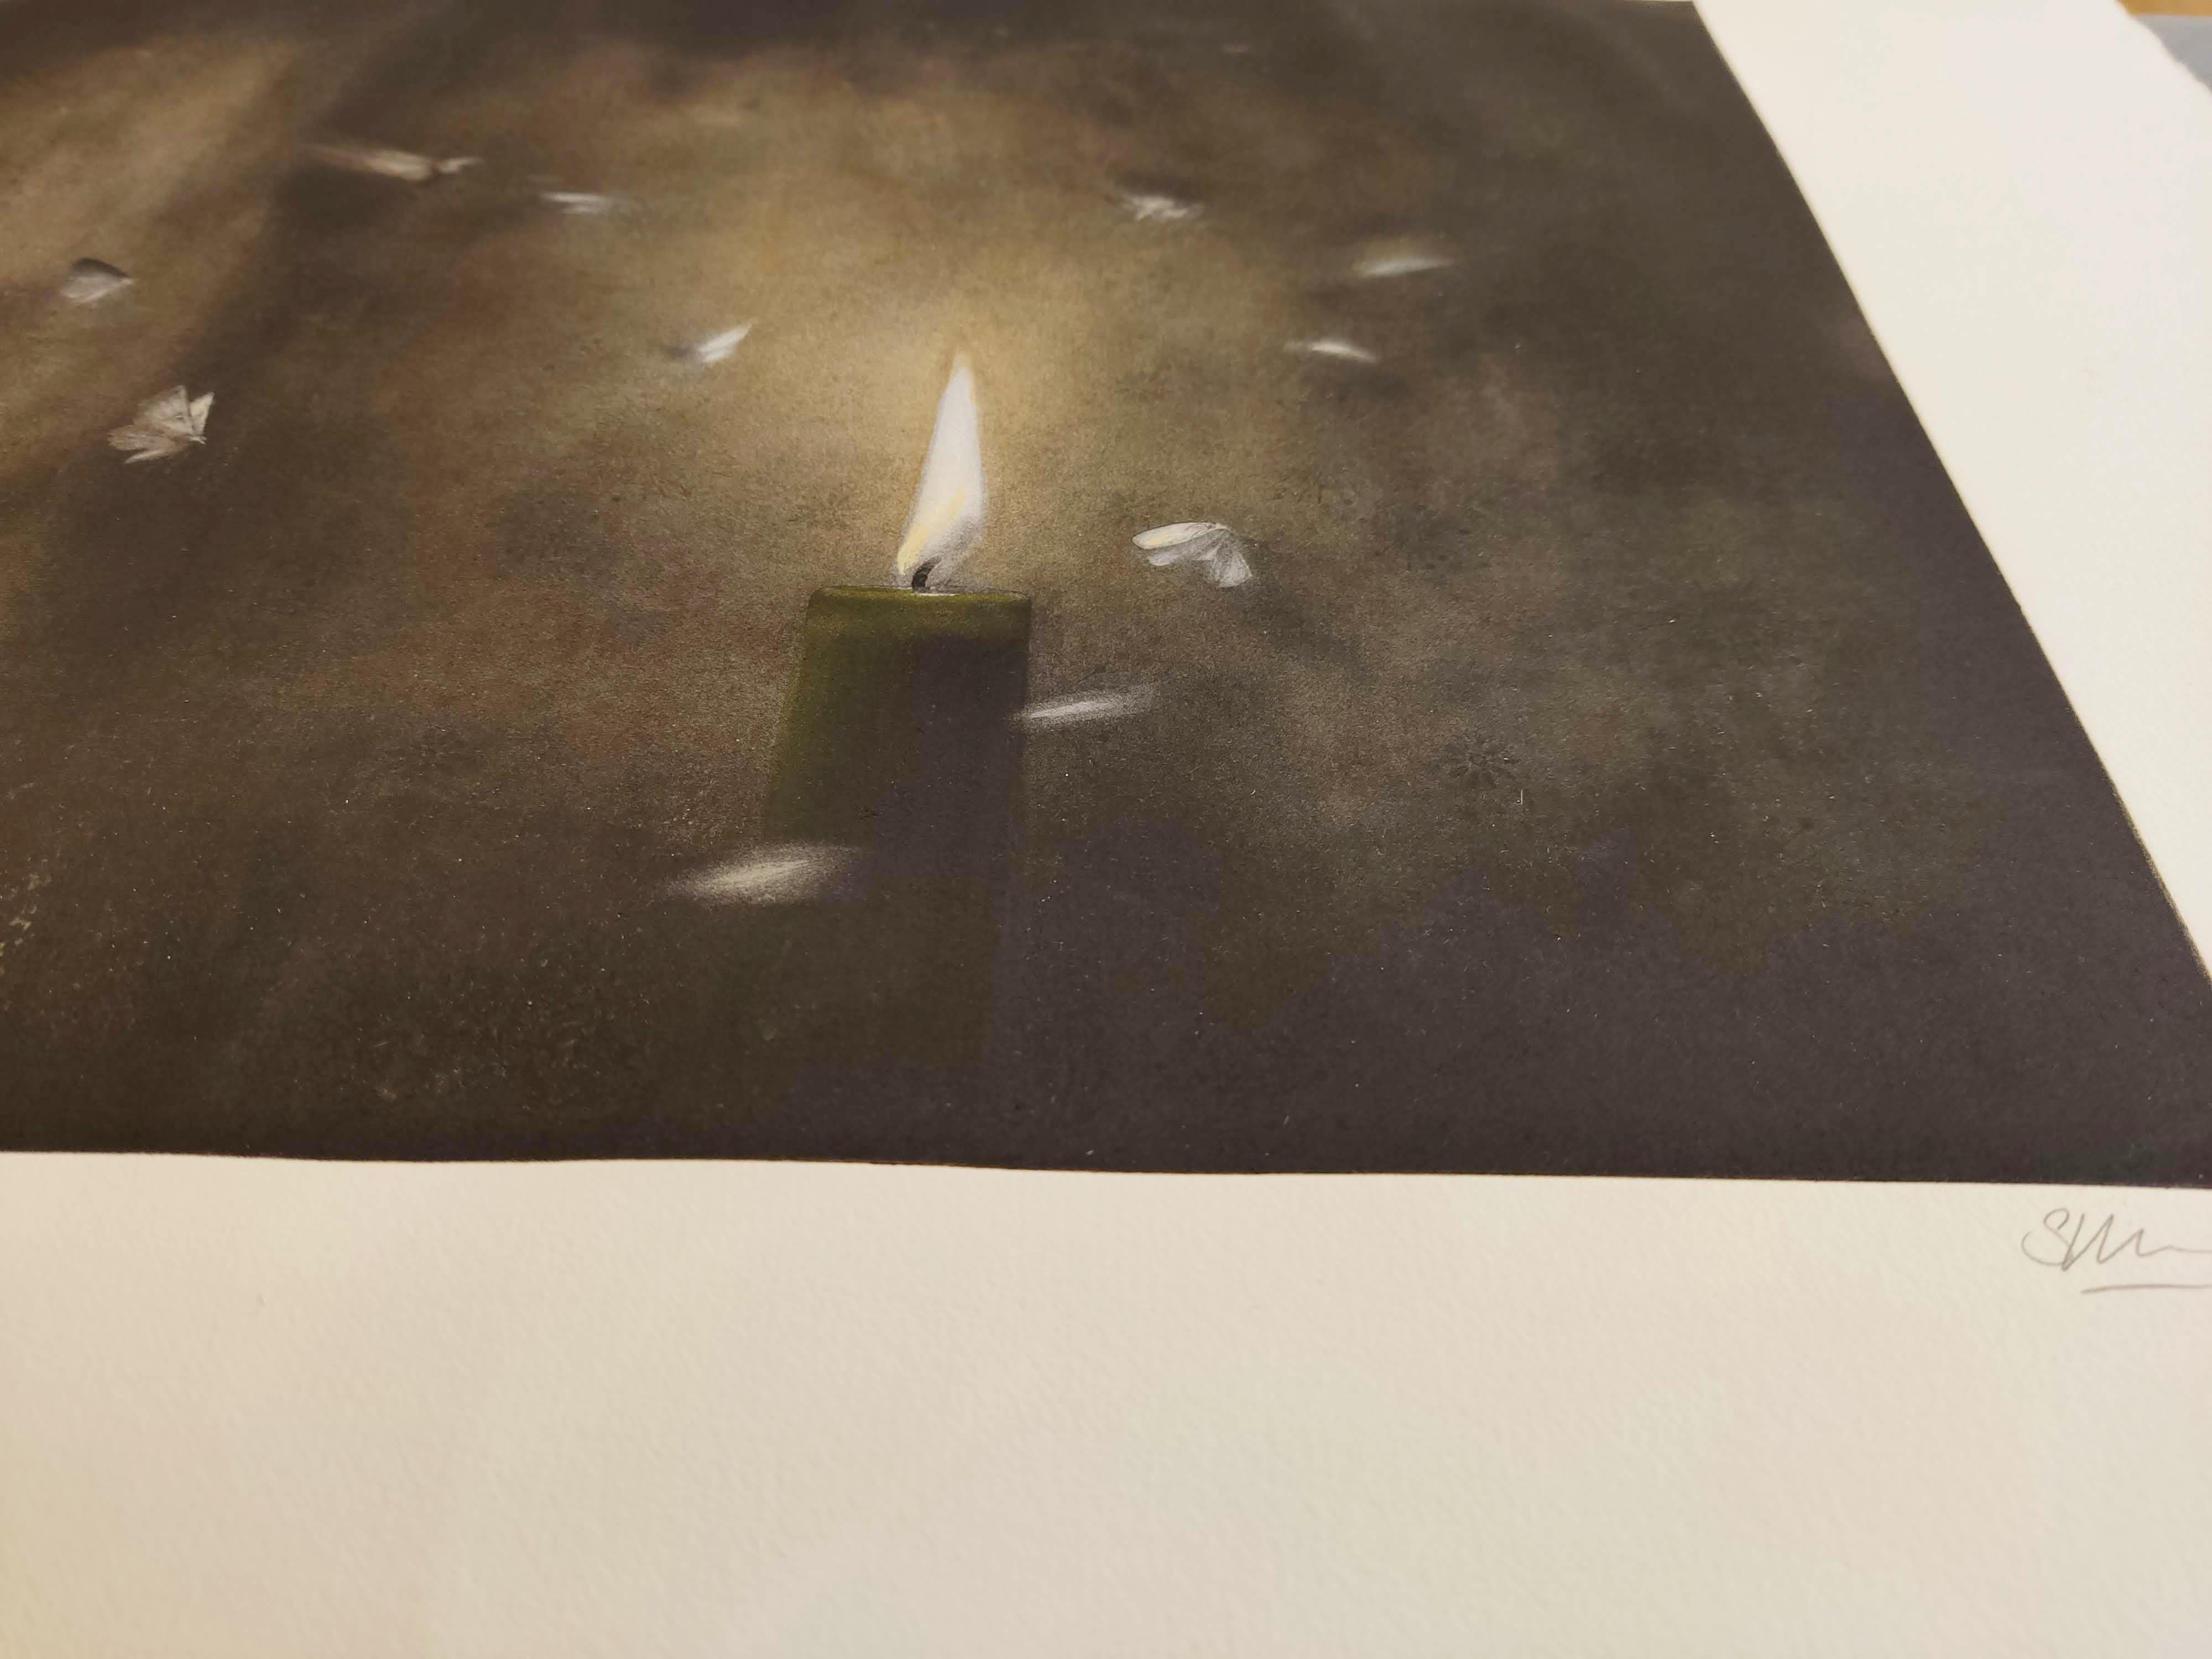 Kerzenleuchter – Interieurfotografie, Gravur, Schmetterling – Photograph von Suzanne Moxhay